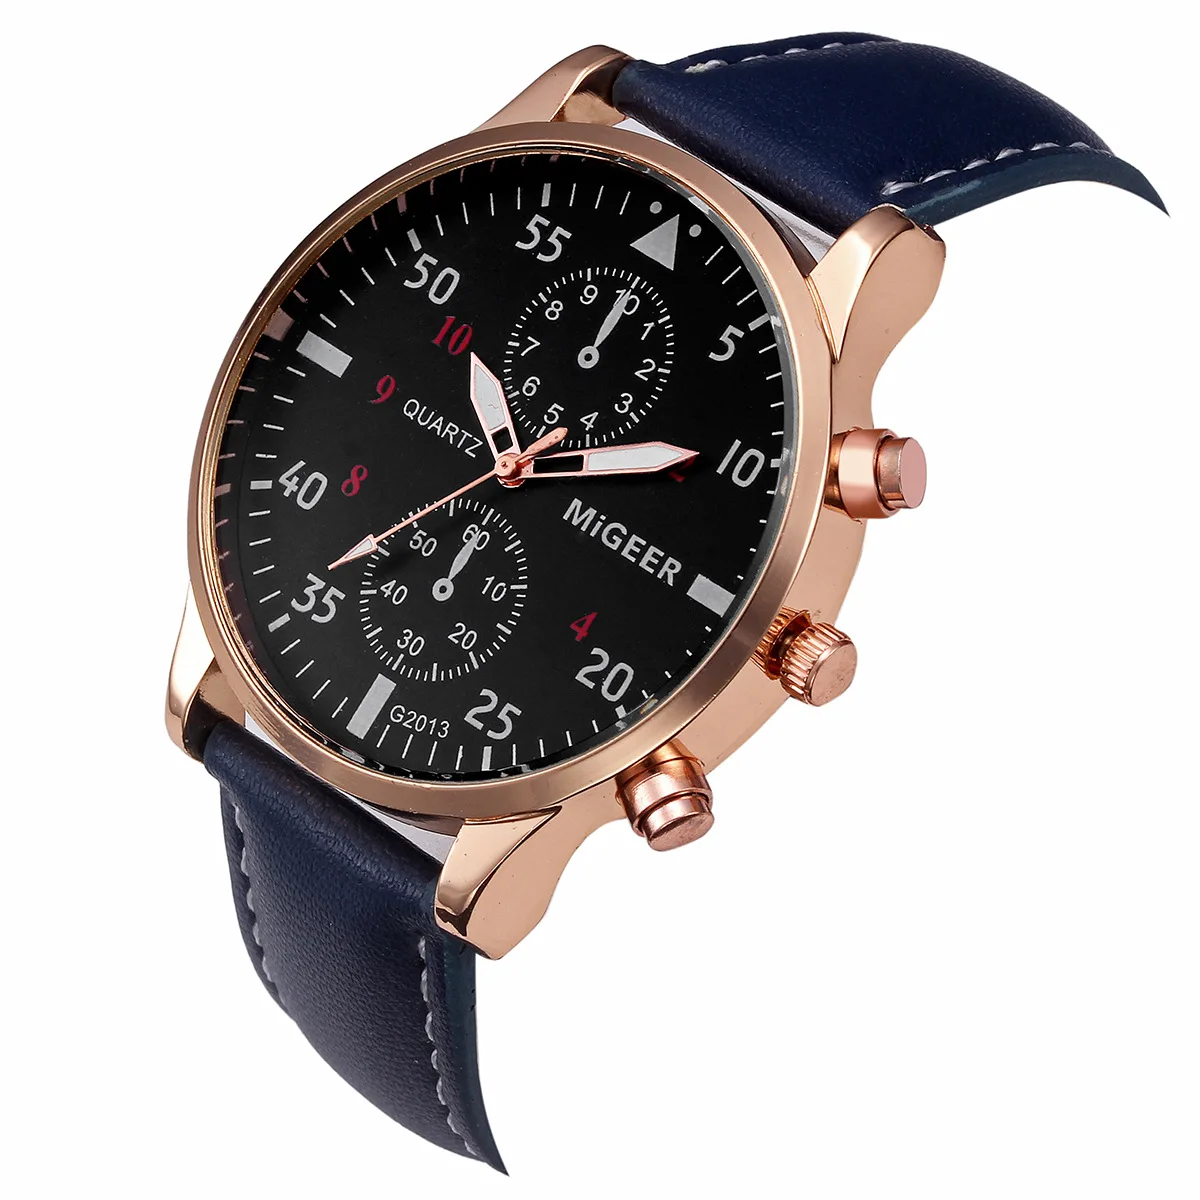 

2021 New Luxury Watch Relogio Korean Men's Watch Belt Quartz Watch MiGEER Fashion Casual Watch Business Watch Men Fashion